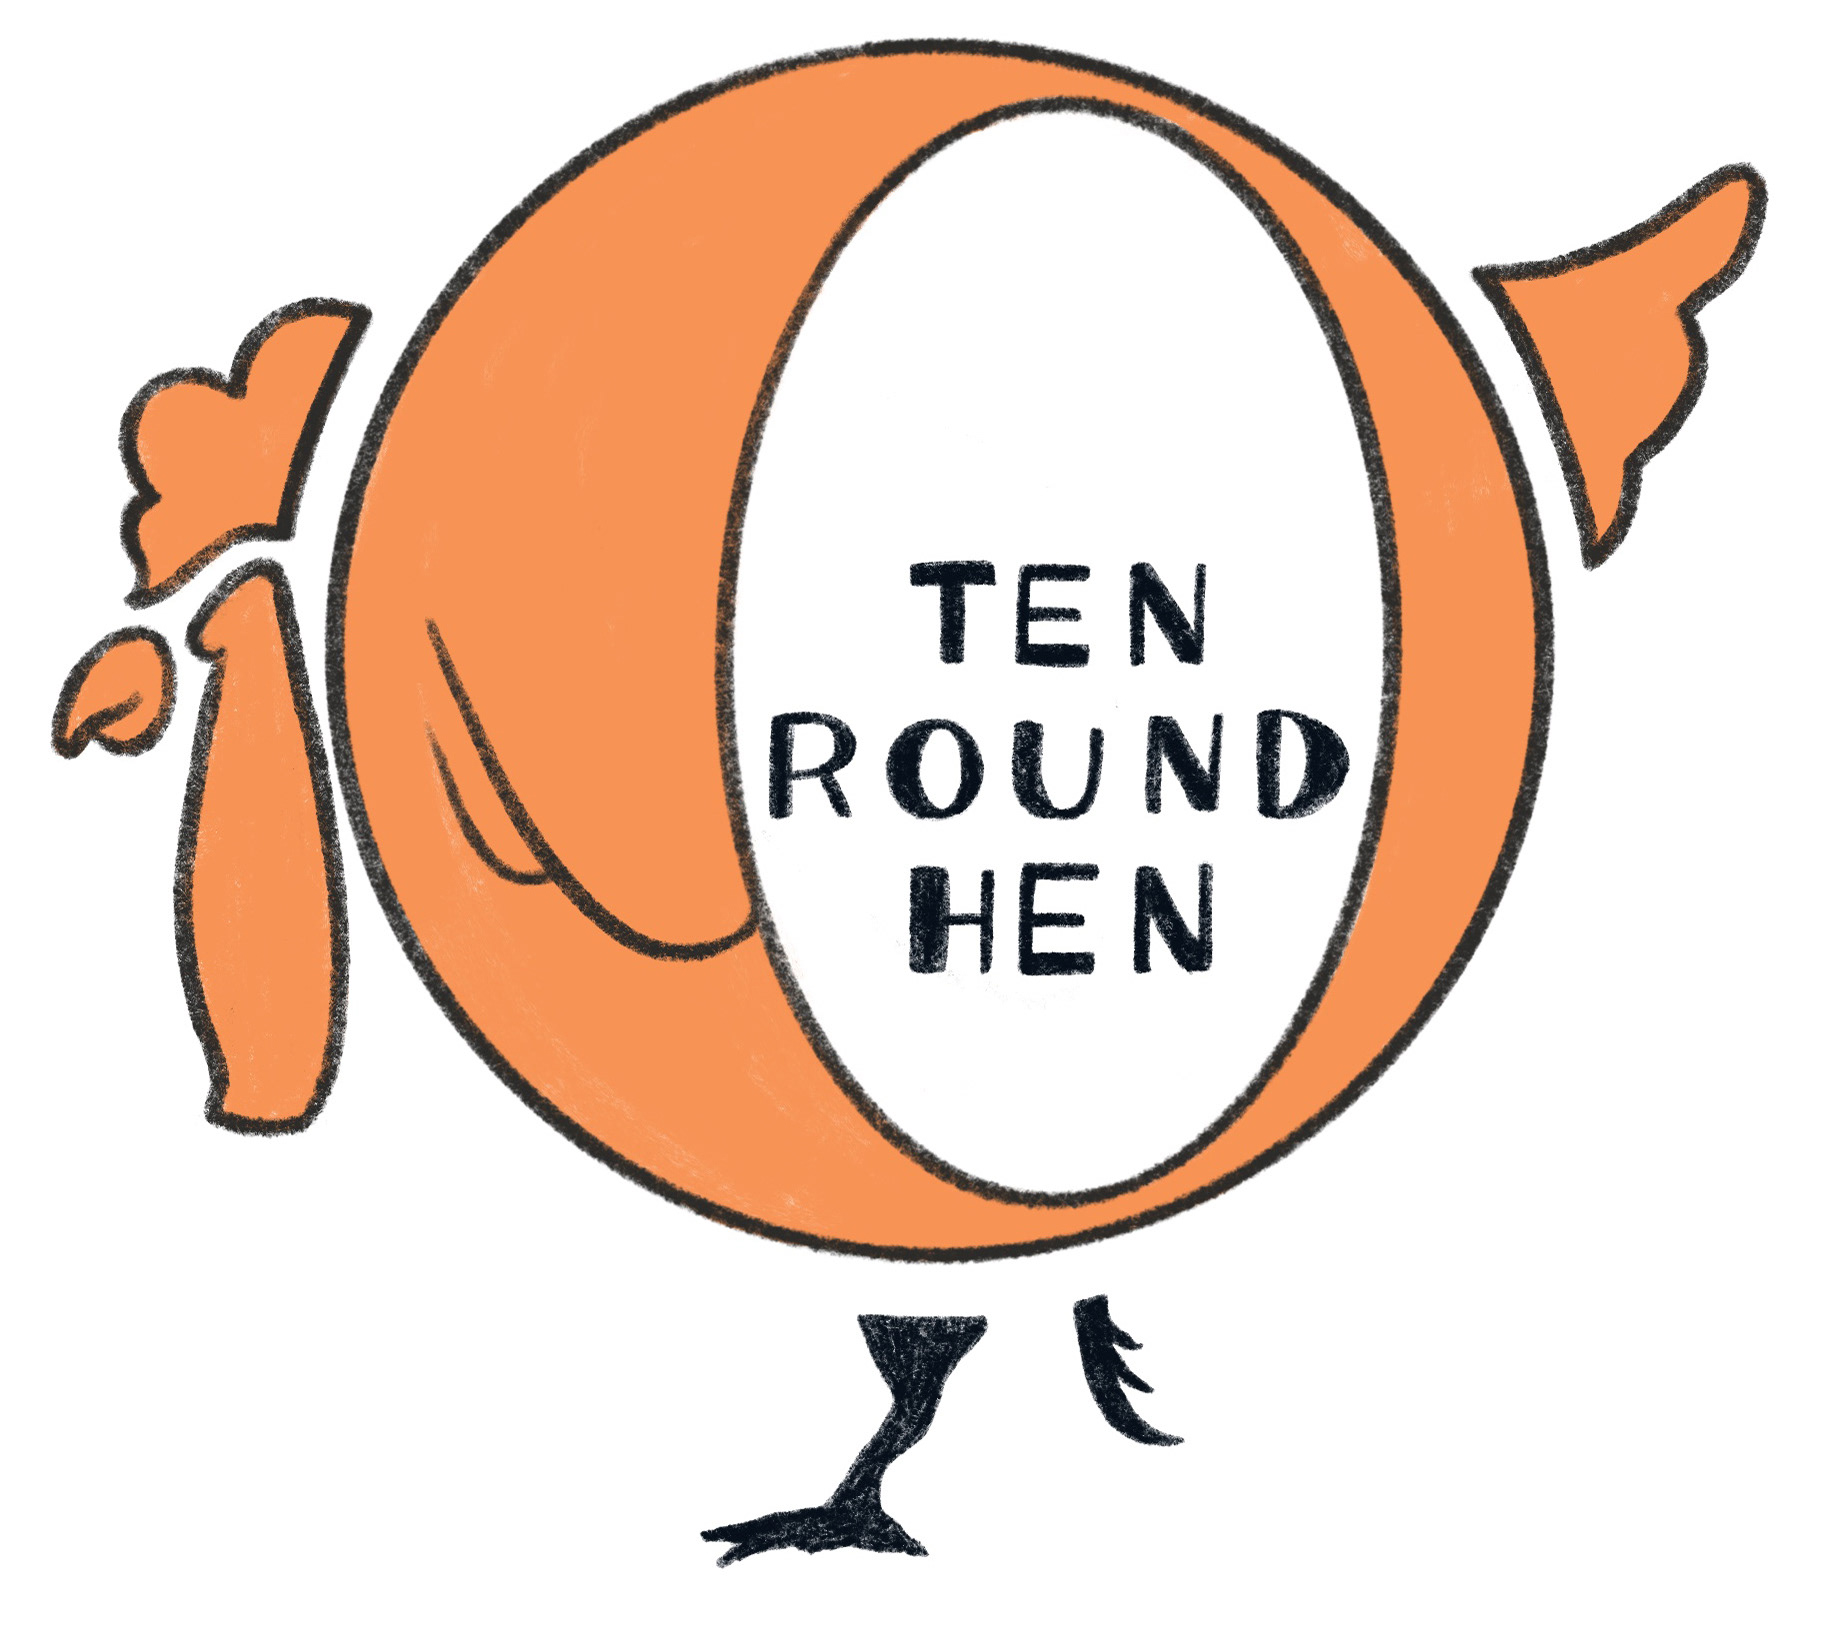 TEN ROUND HEN